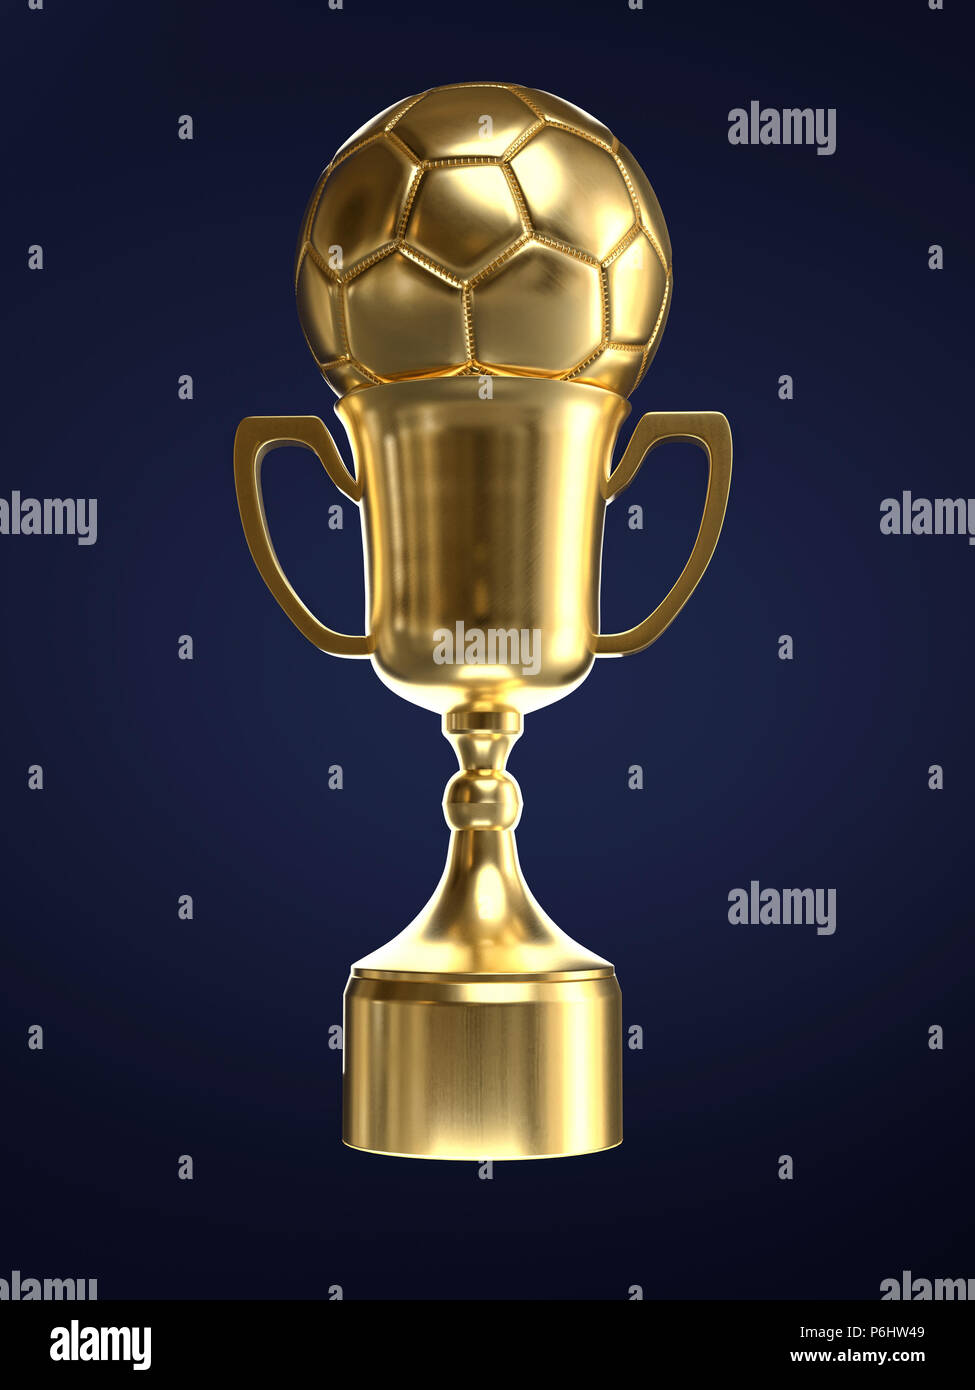 3D render of golden trophy cup avec ballon de soccer sur fond bleu foncé Banque D'Images